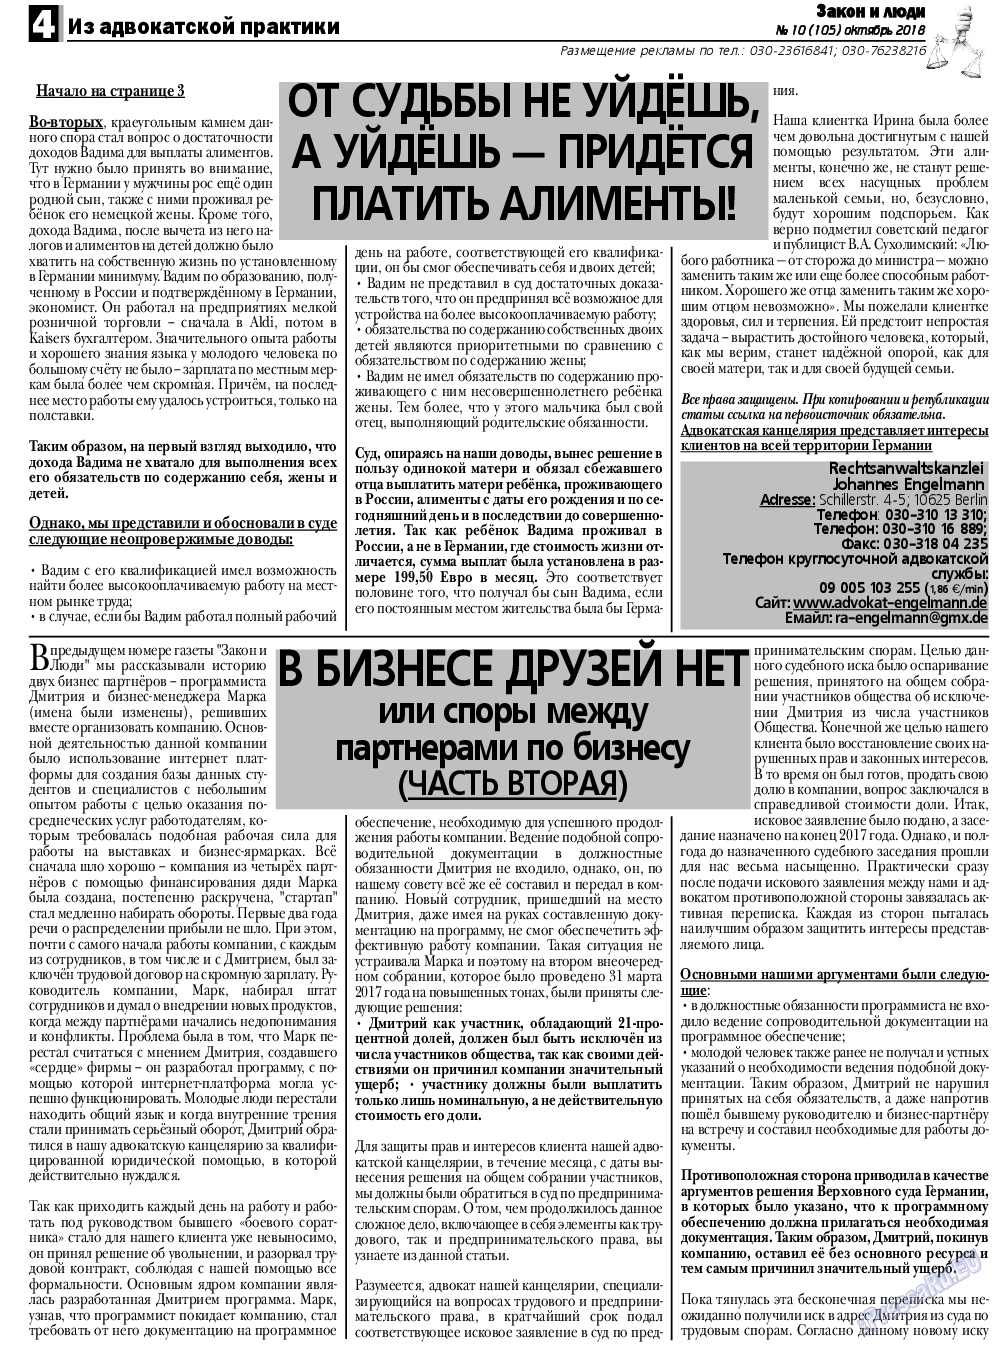 Закон и люди, газета. 2018 №10 стр.4